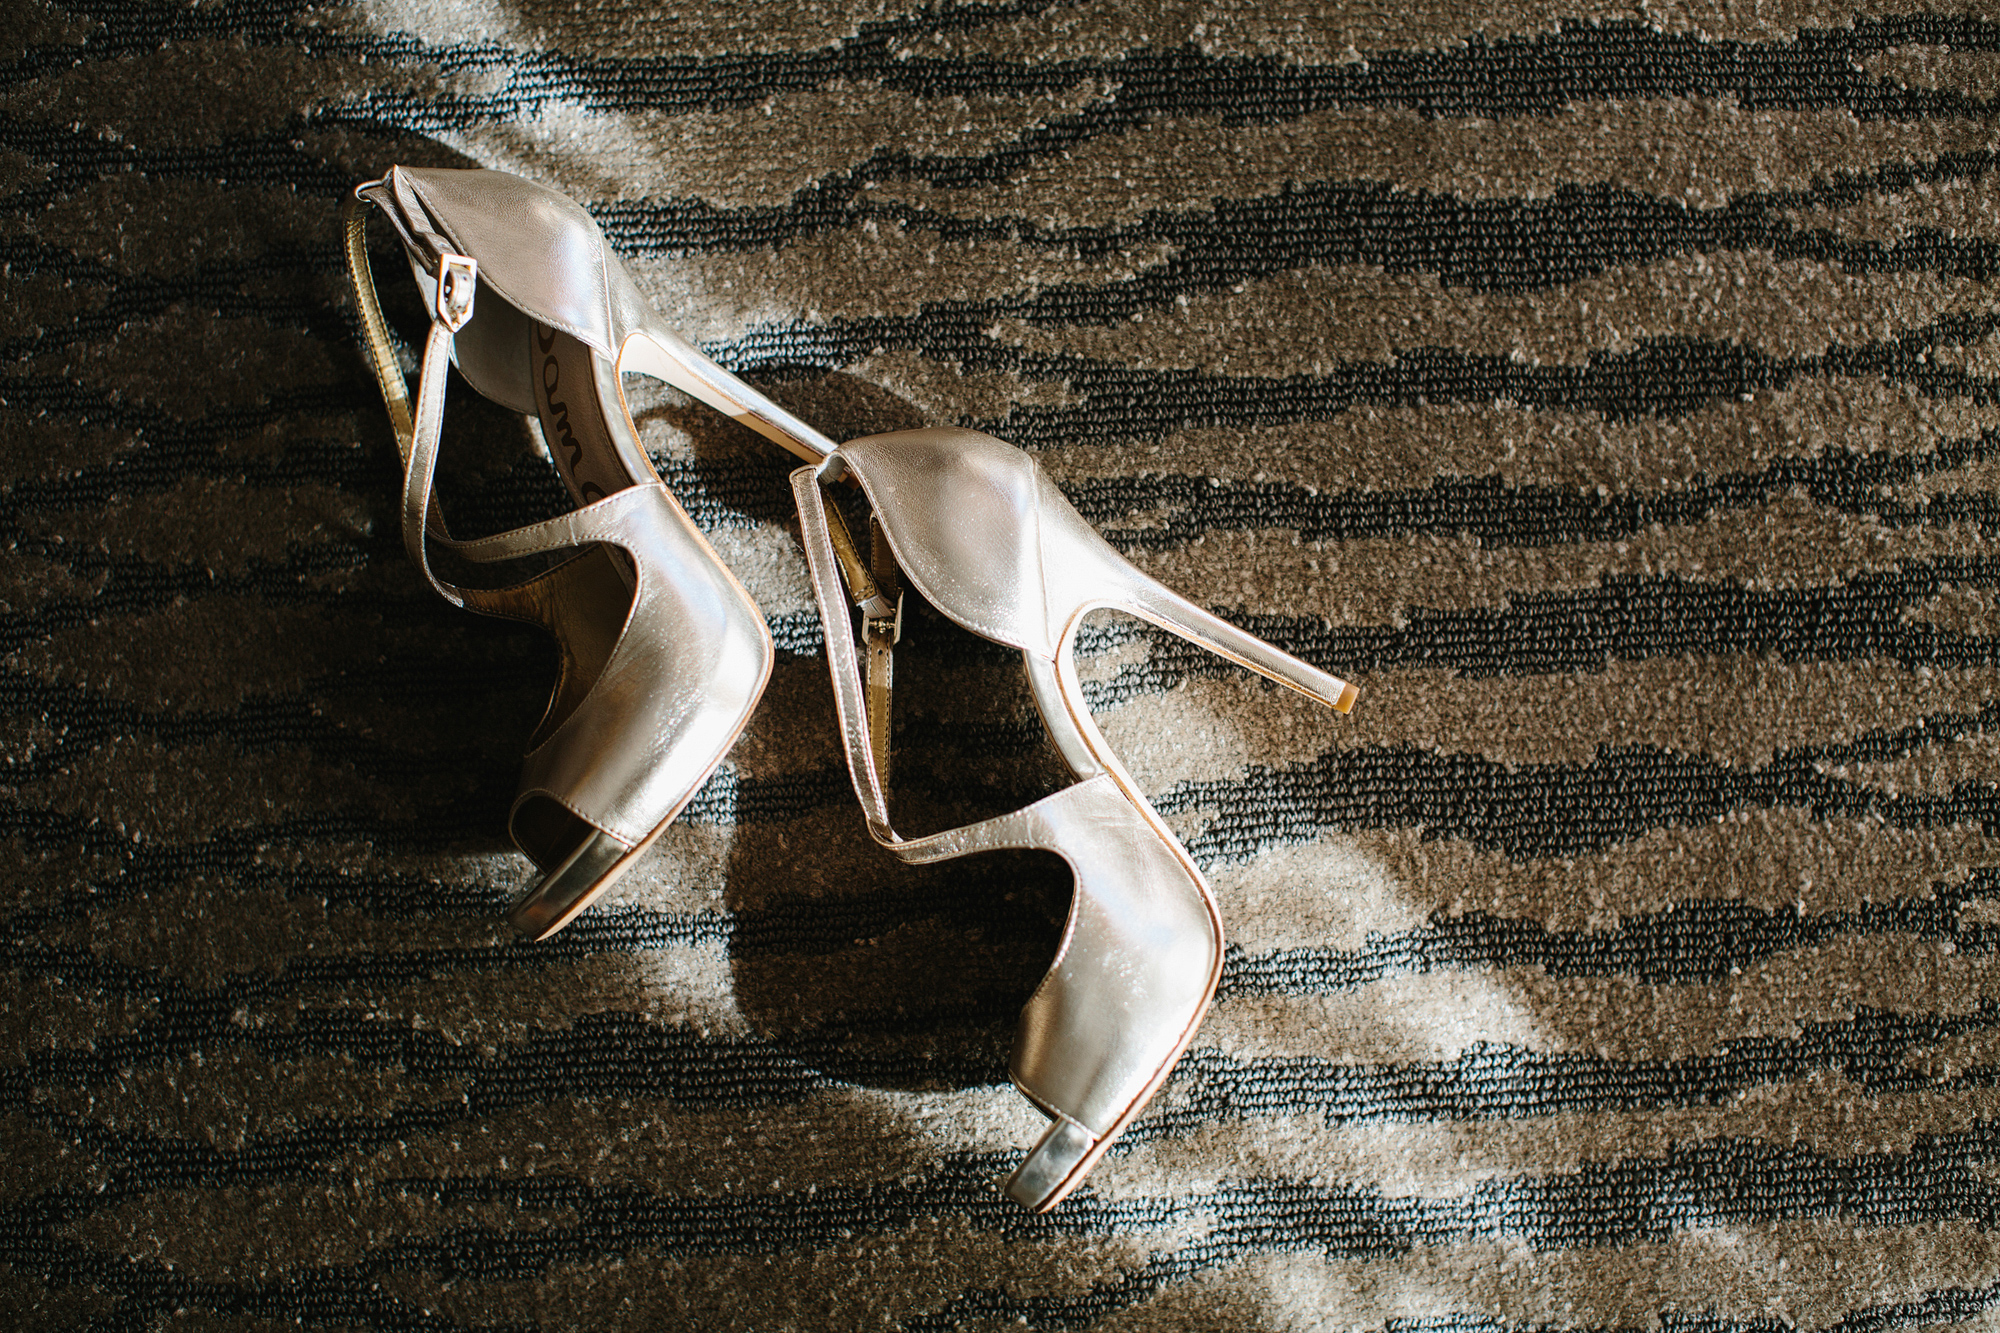 Bailey's gold heels in the sunlight in her hotel room. 